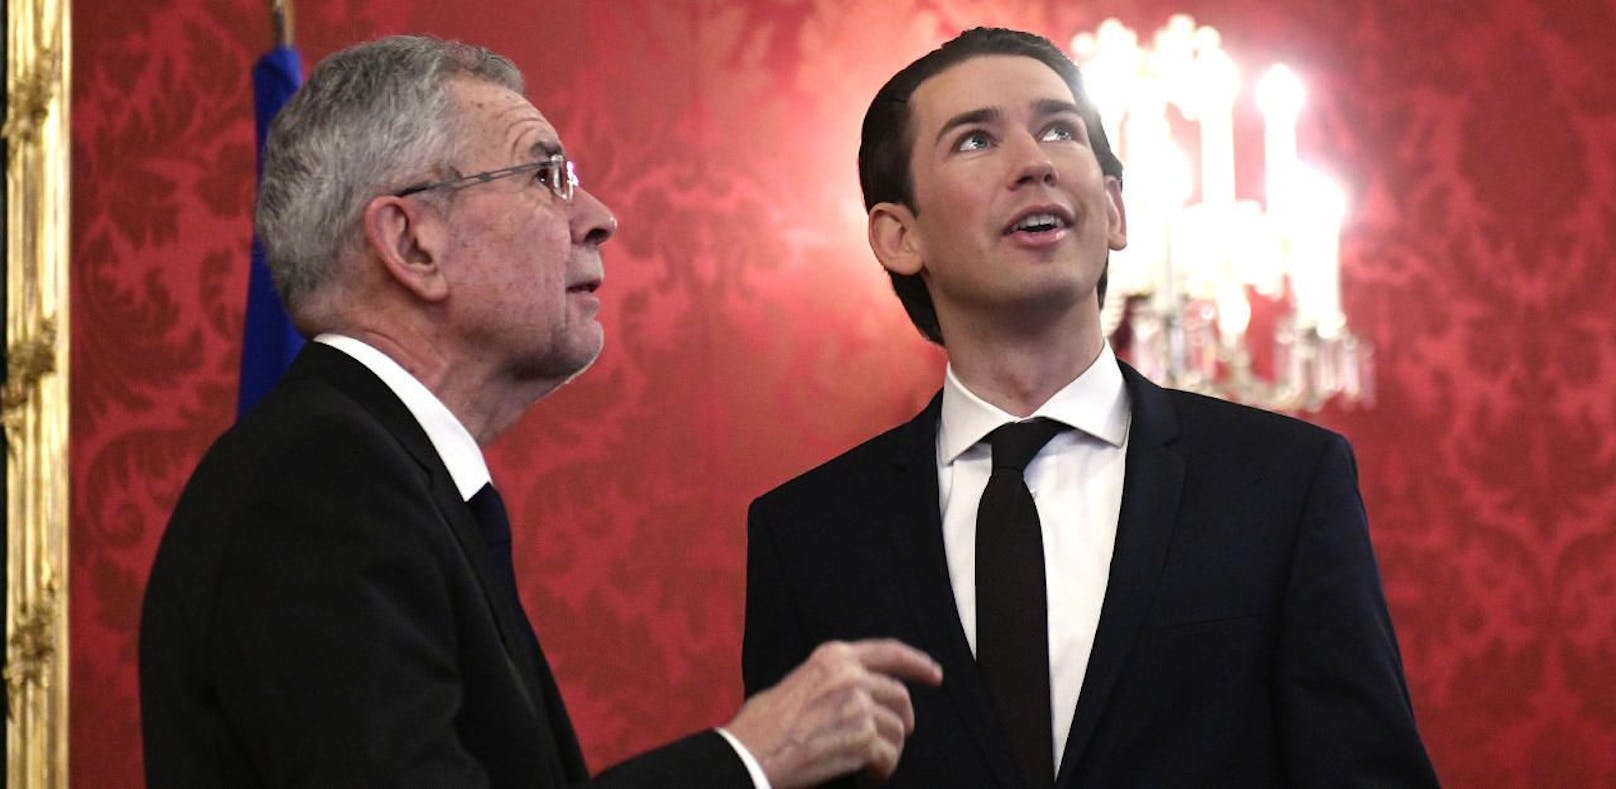 ÖVP-Obmann Sebastian Kurz wird mit FPÖ-Koalitionspartner Heinz-Christian Strache am Samstag bei Bundespräsident Alexander Van der Bellen in der Hofburg erwartet.